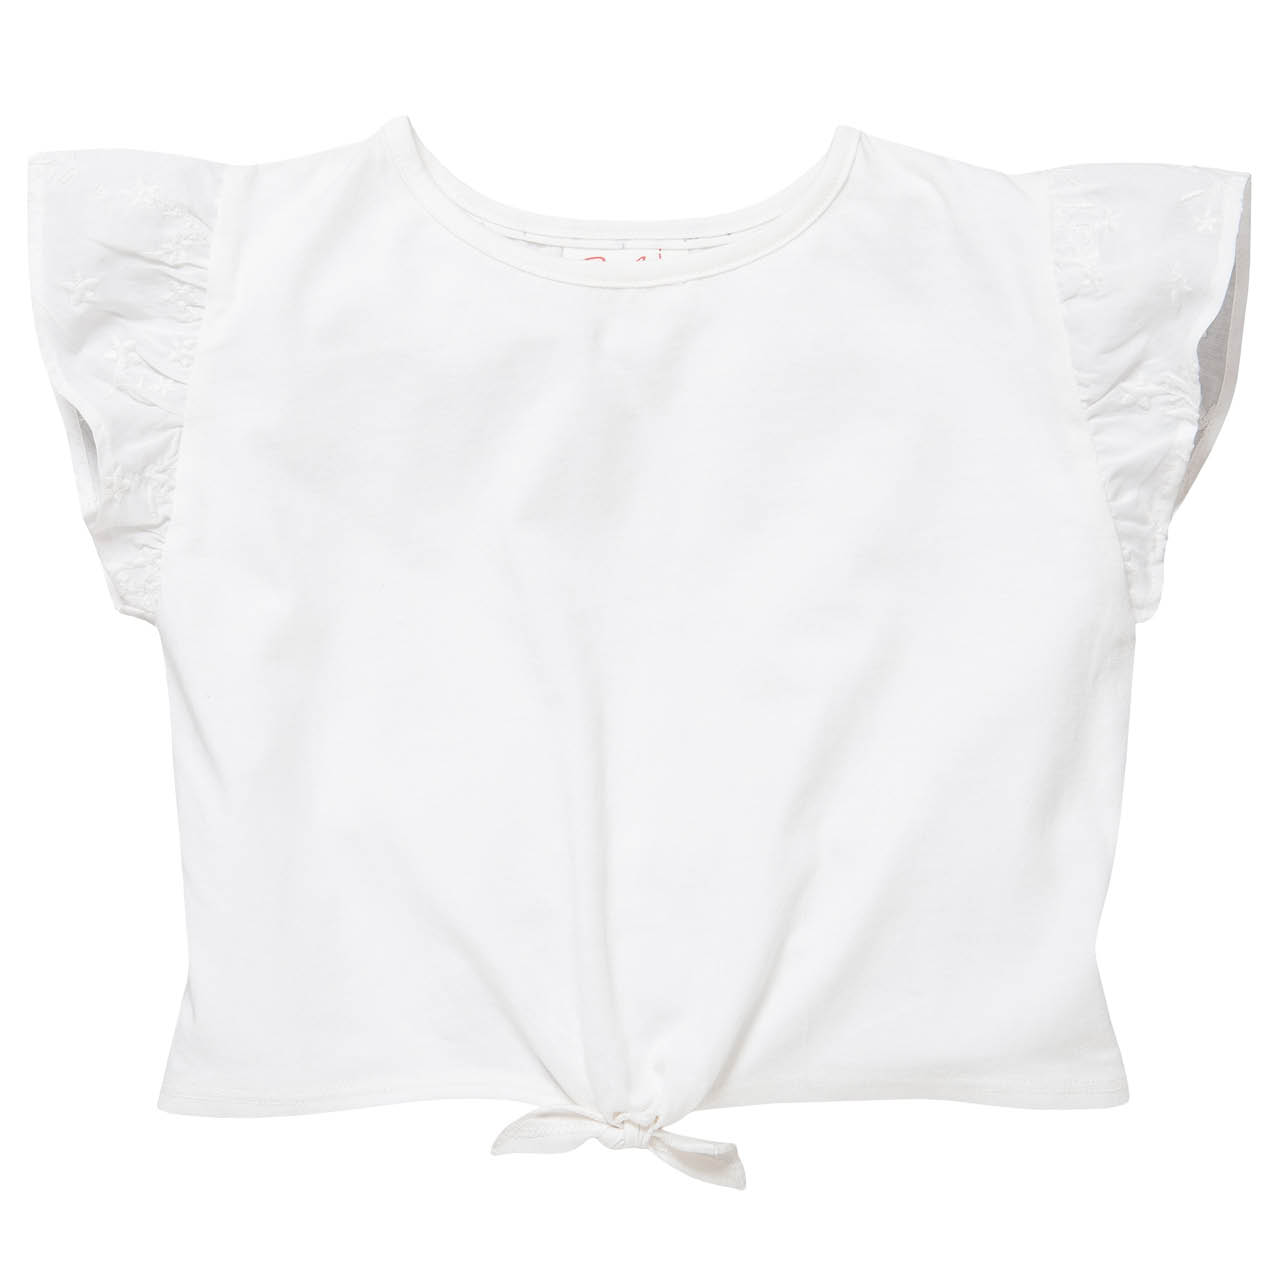 Sommerliches T-Shirt Knotendetail weiß